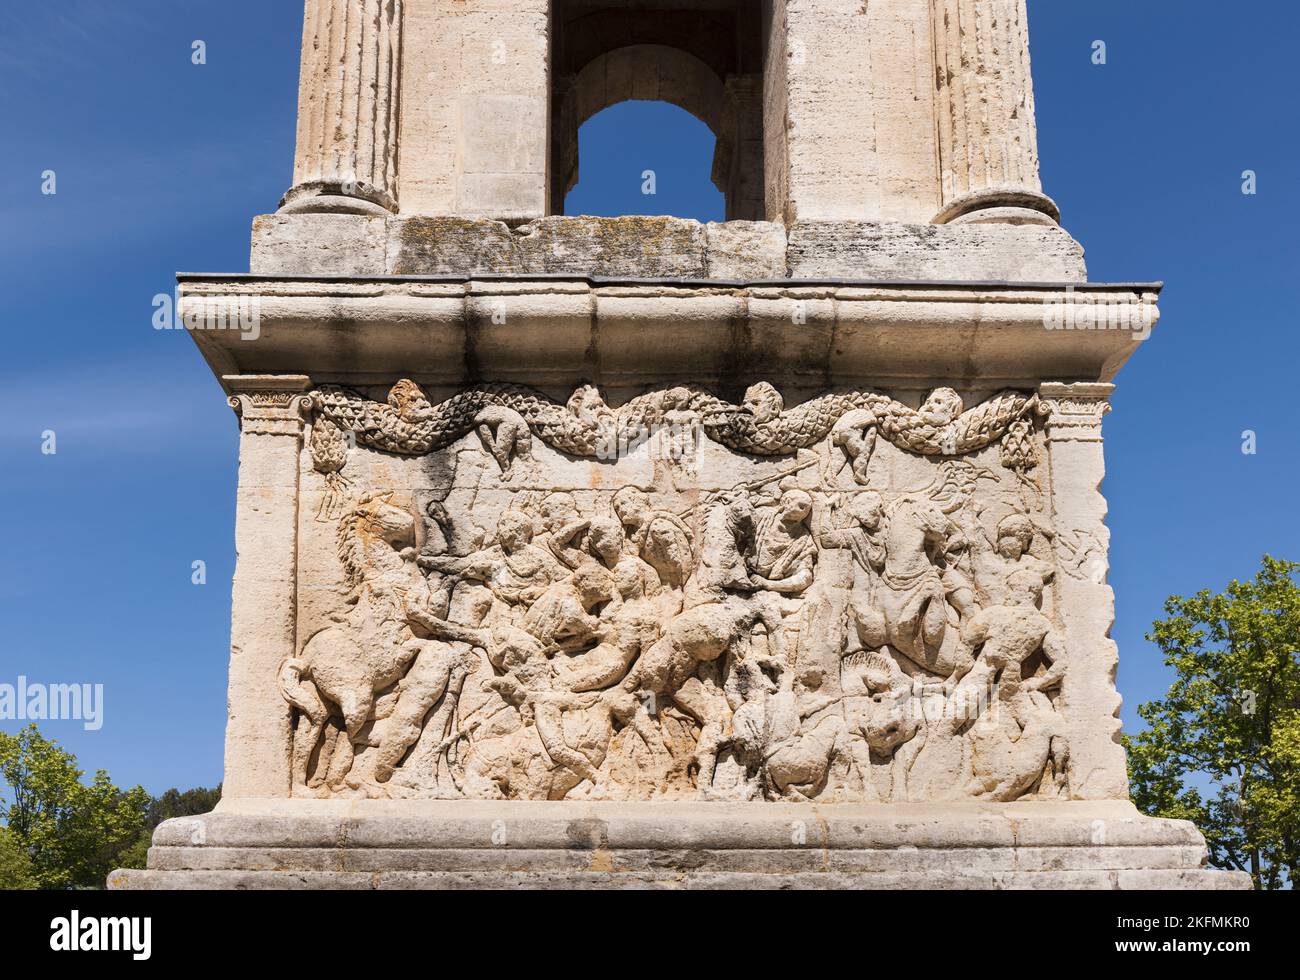 Saint-Rémy-de-Provence, Bouches-du-Rhône, Provenza, Francia. Fregio di scena di battaglia sul podio del Mausoleo. La struttura risale al 30 a.C. circa Foto Stock